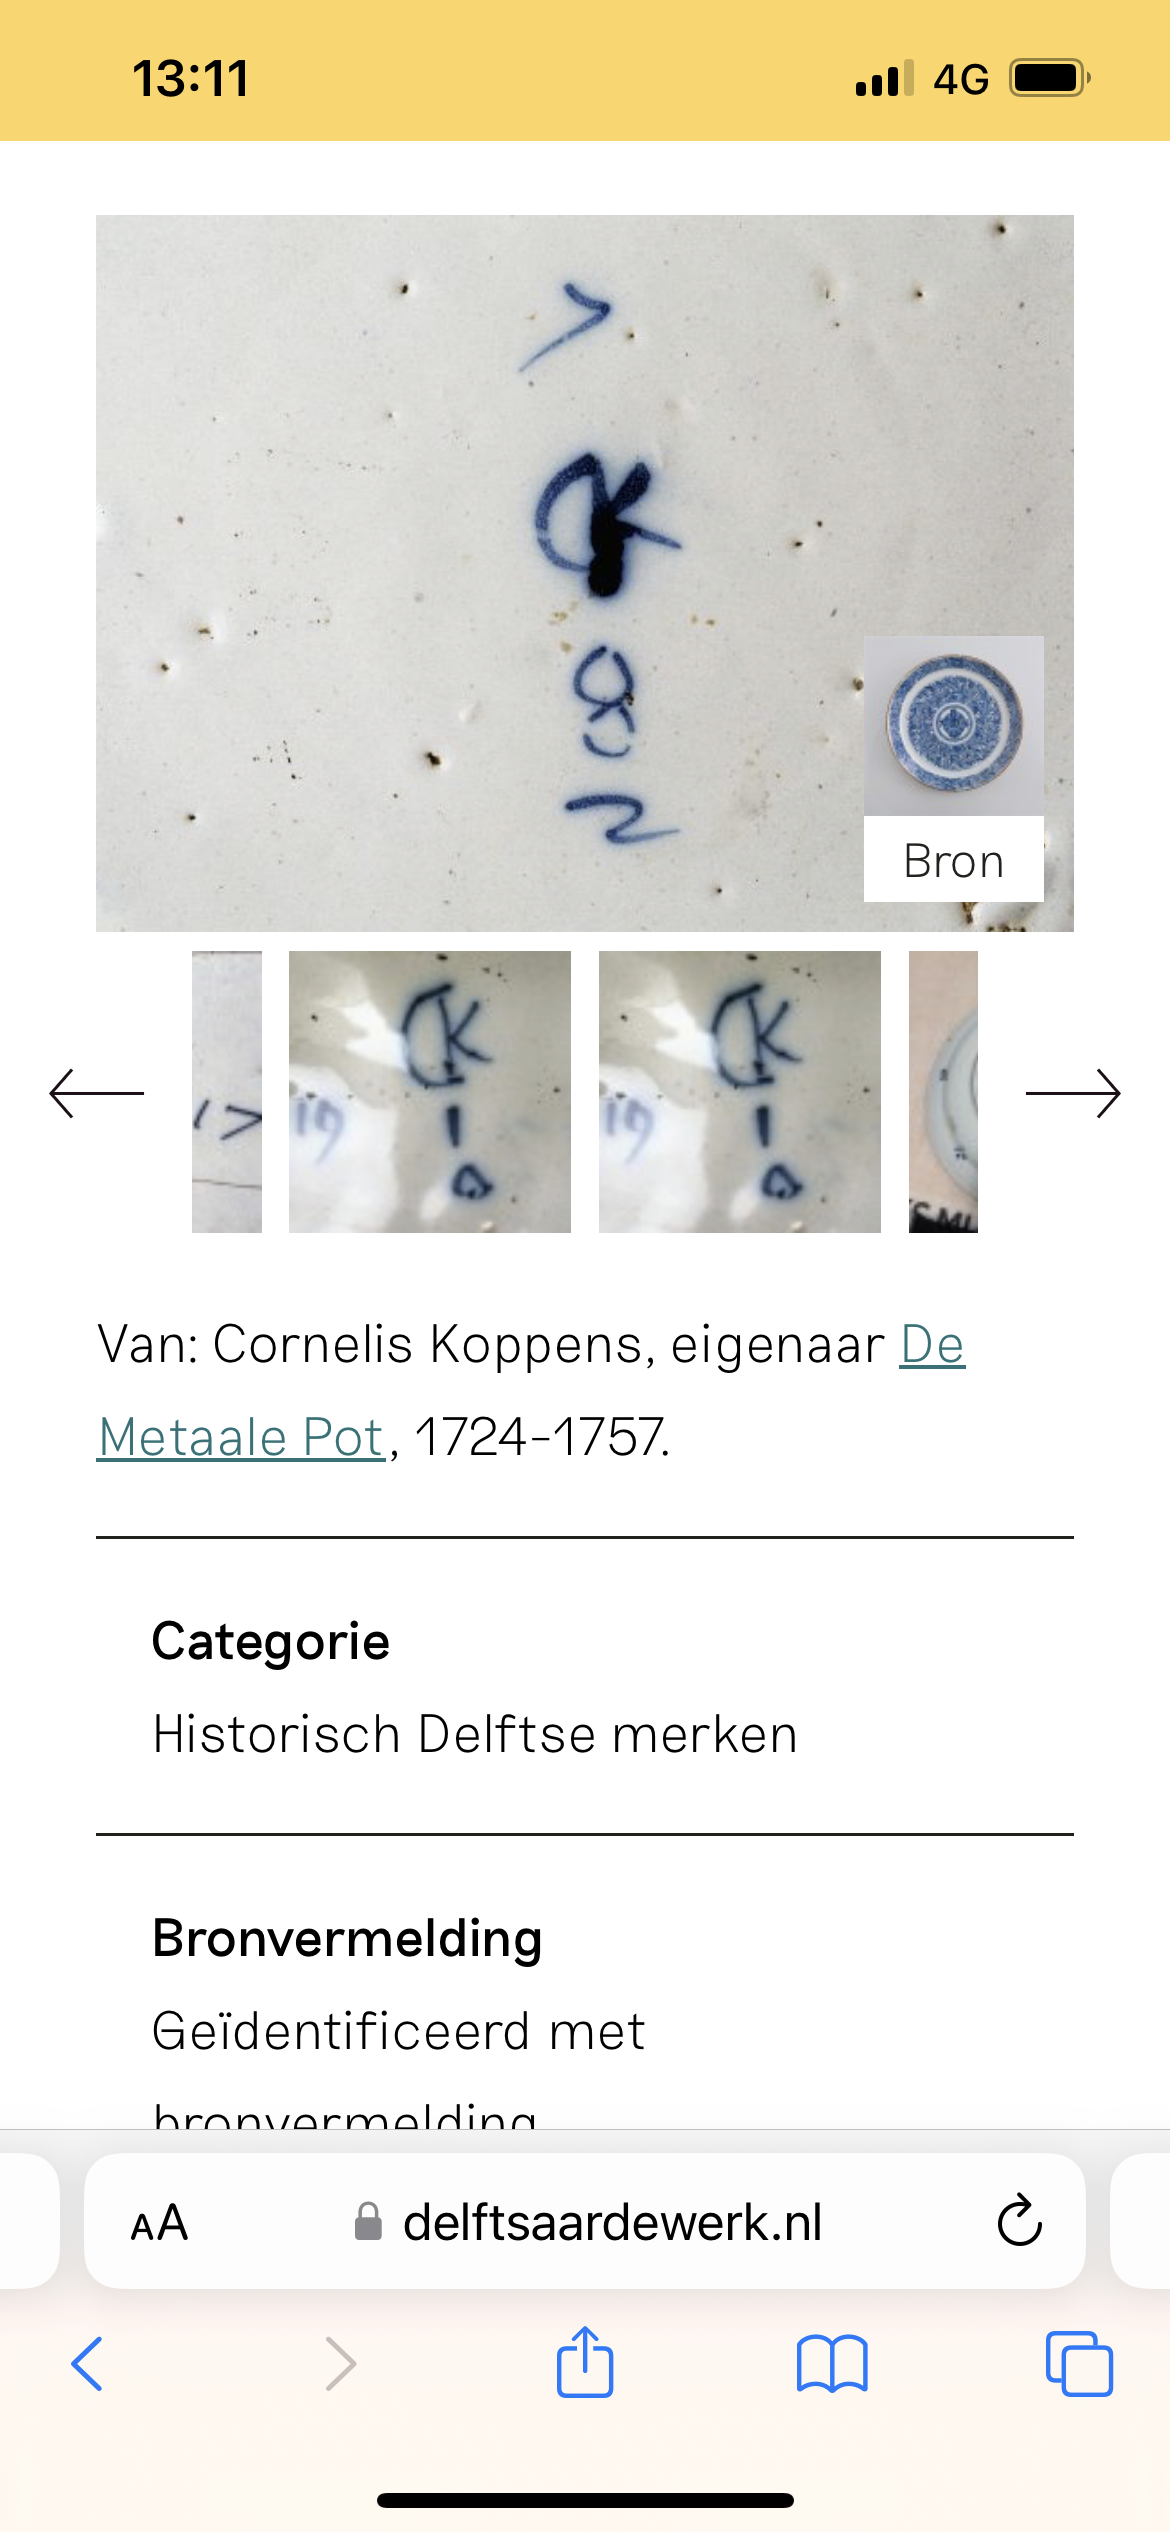 CK niet van Dissel maar de Metaale Pot van Cornelis Pot volgens merkenindex van deze site. Ondanks dat het een imitatie is vindt ik hem toch leuk met nog een behoorlijke leeftijd